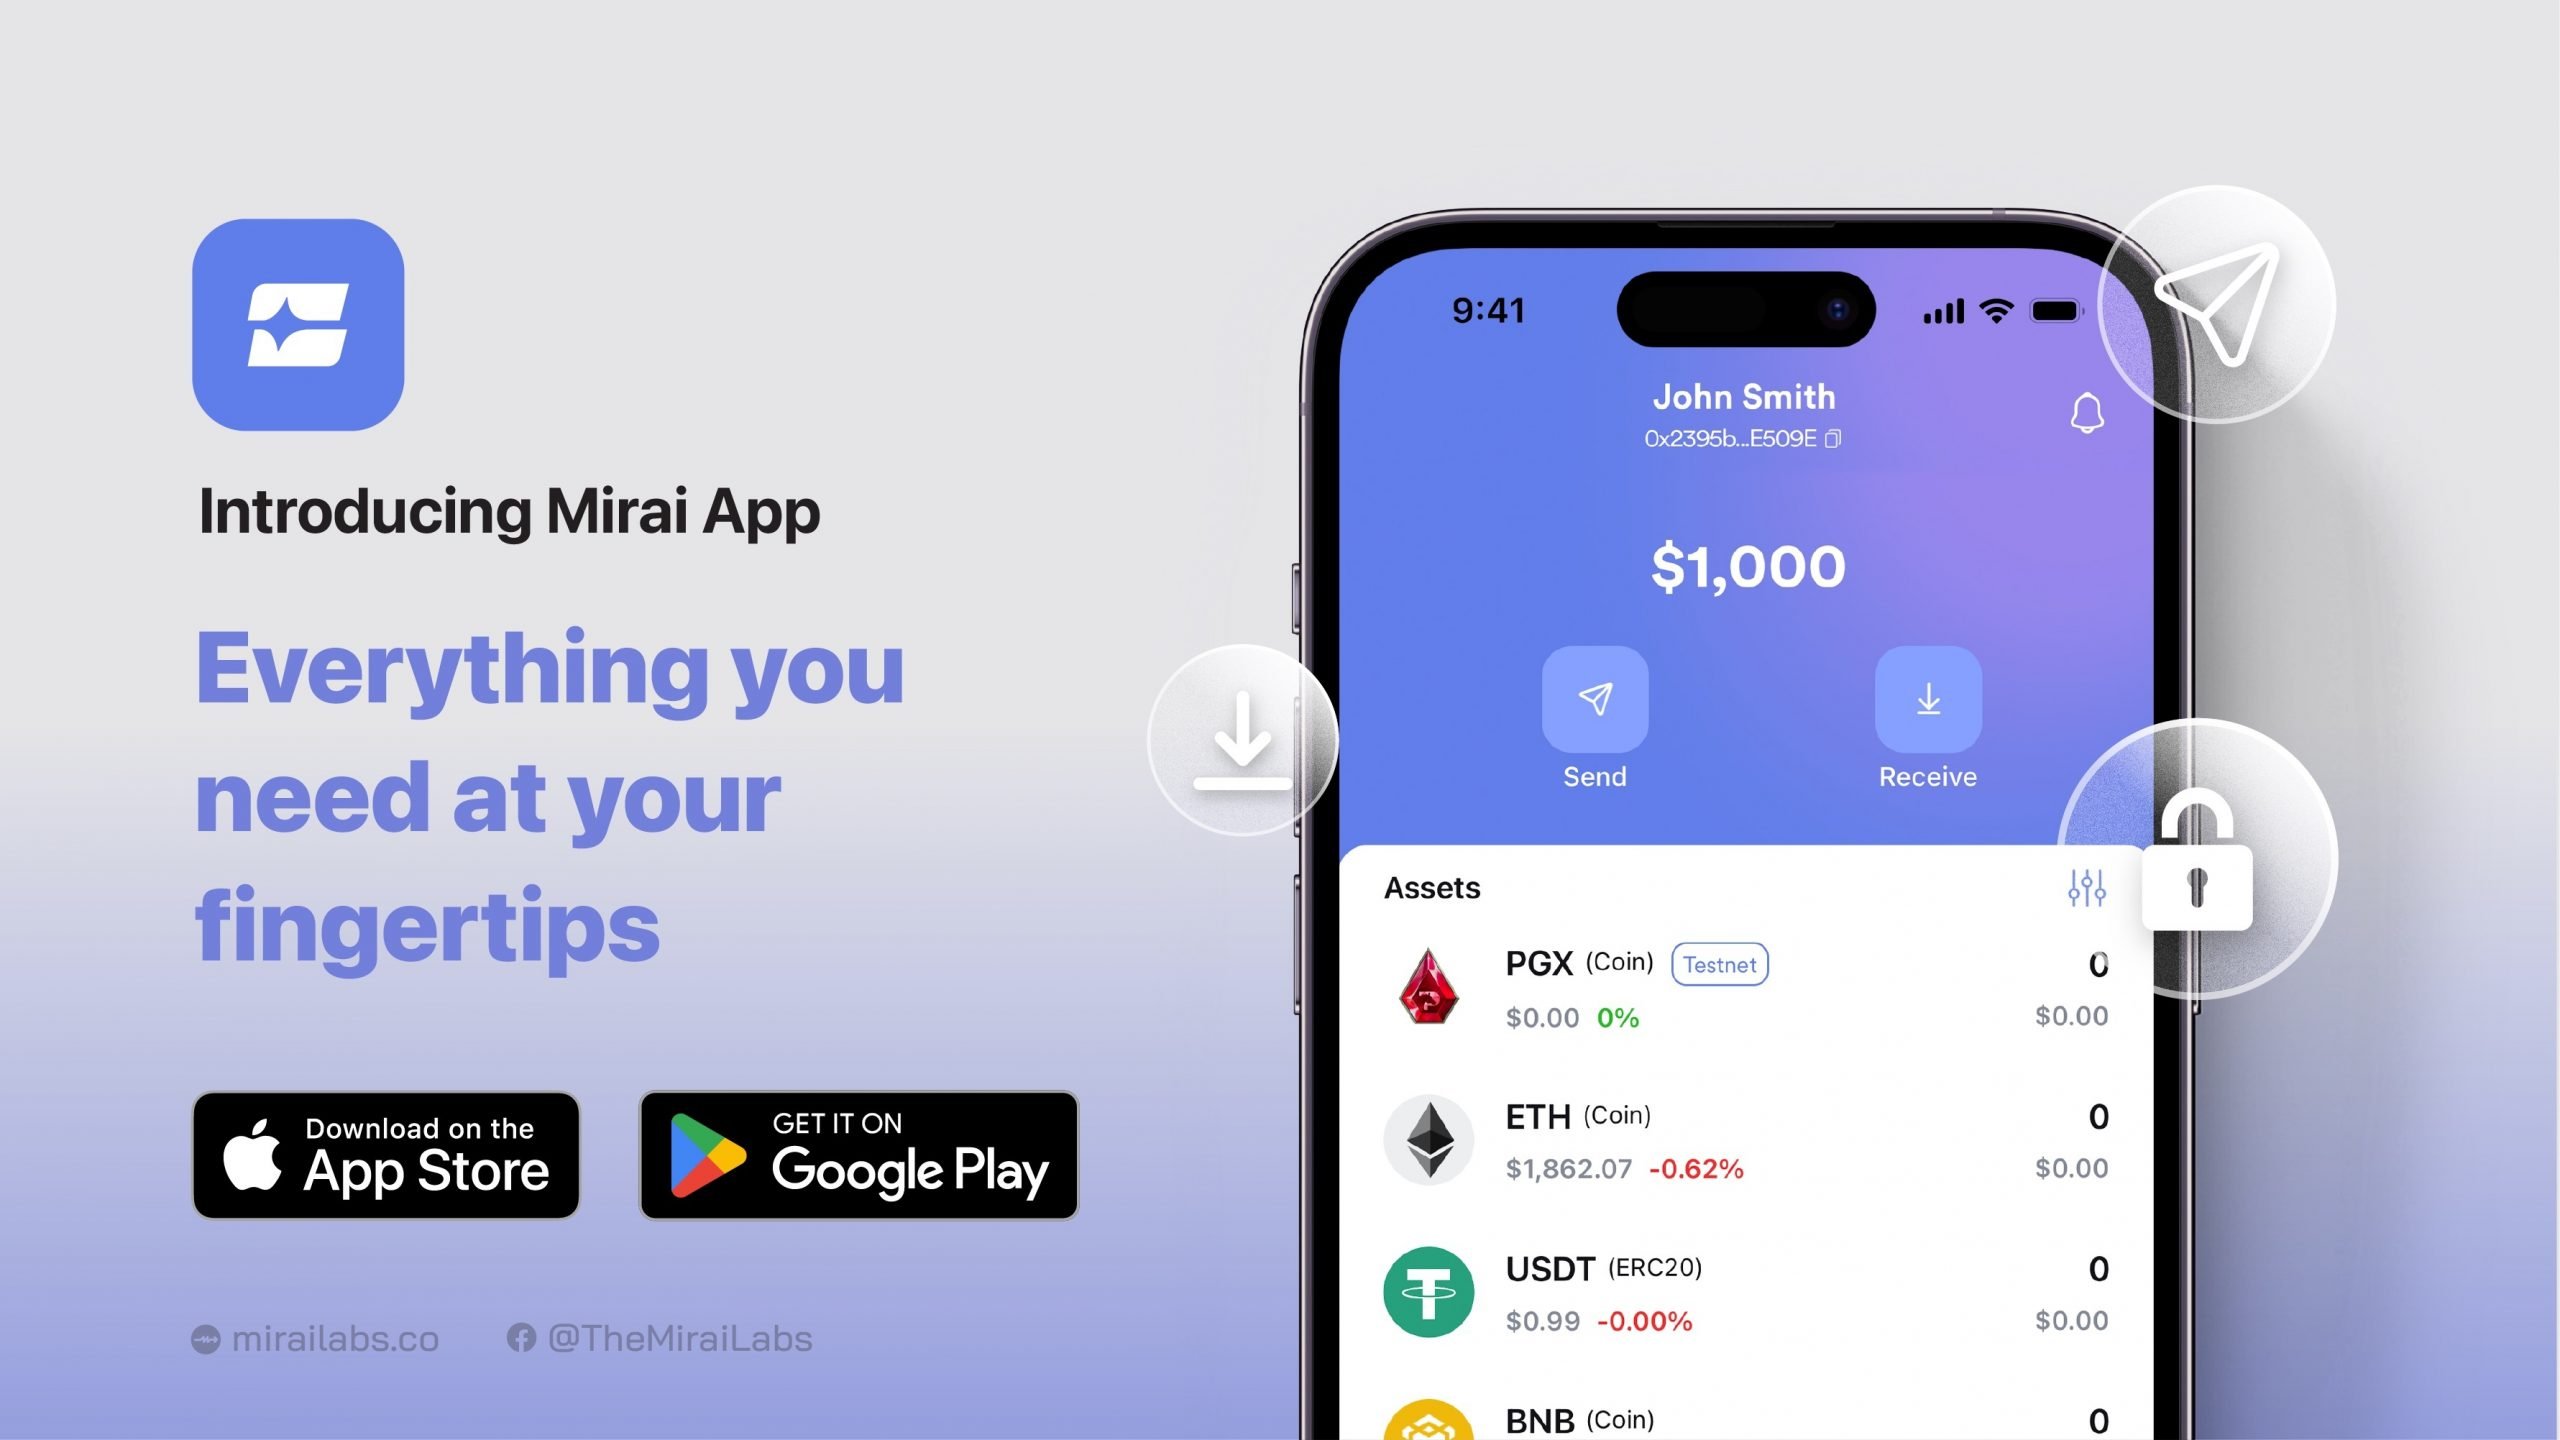 Introducing the Mirai App